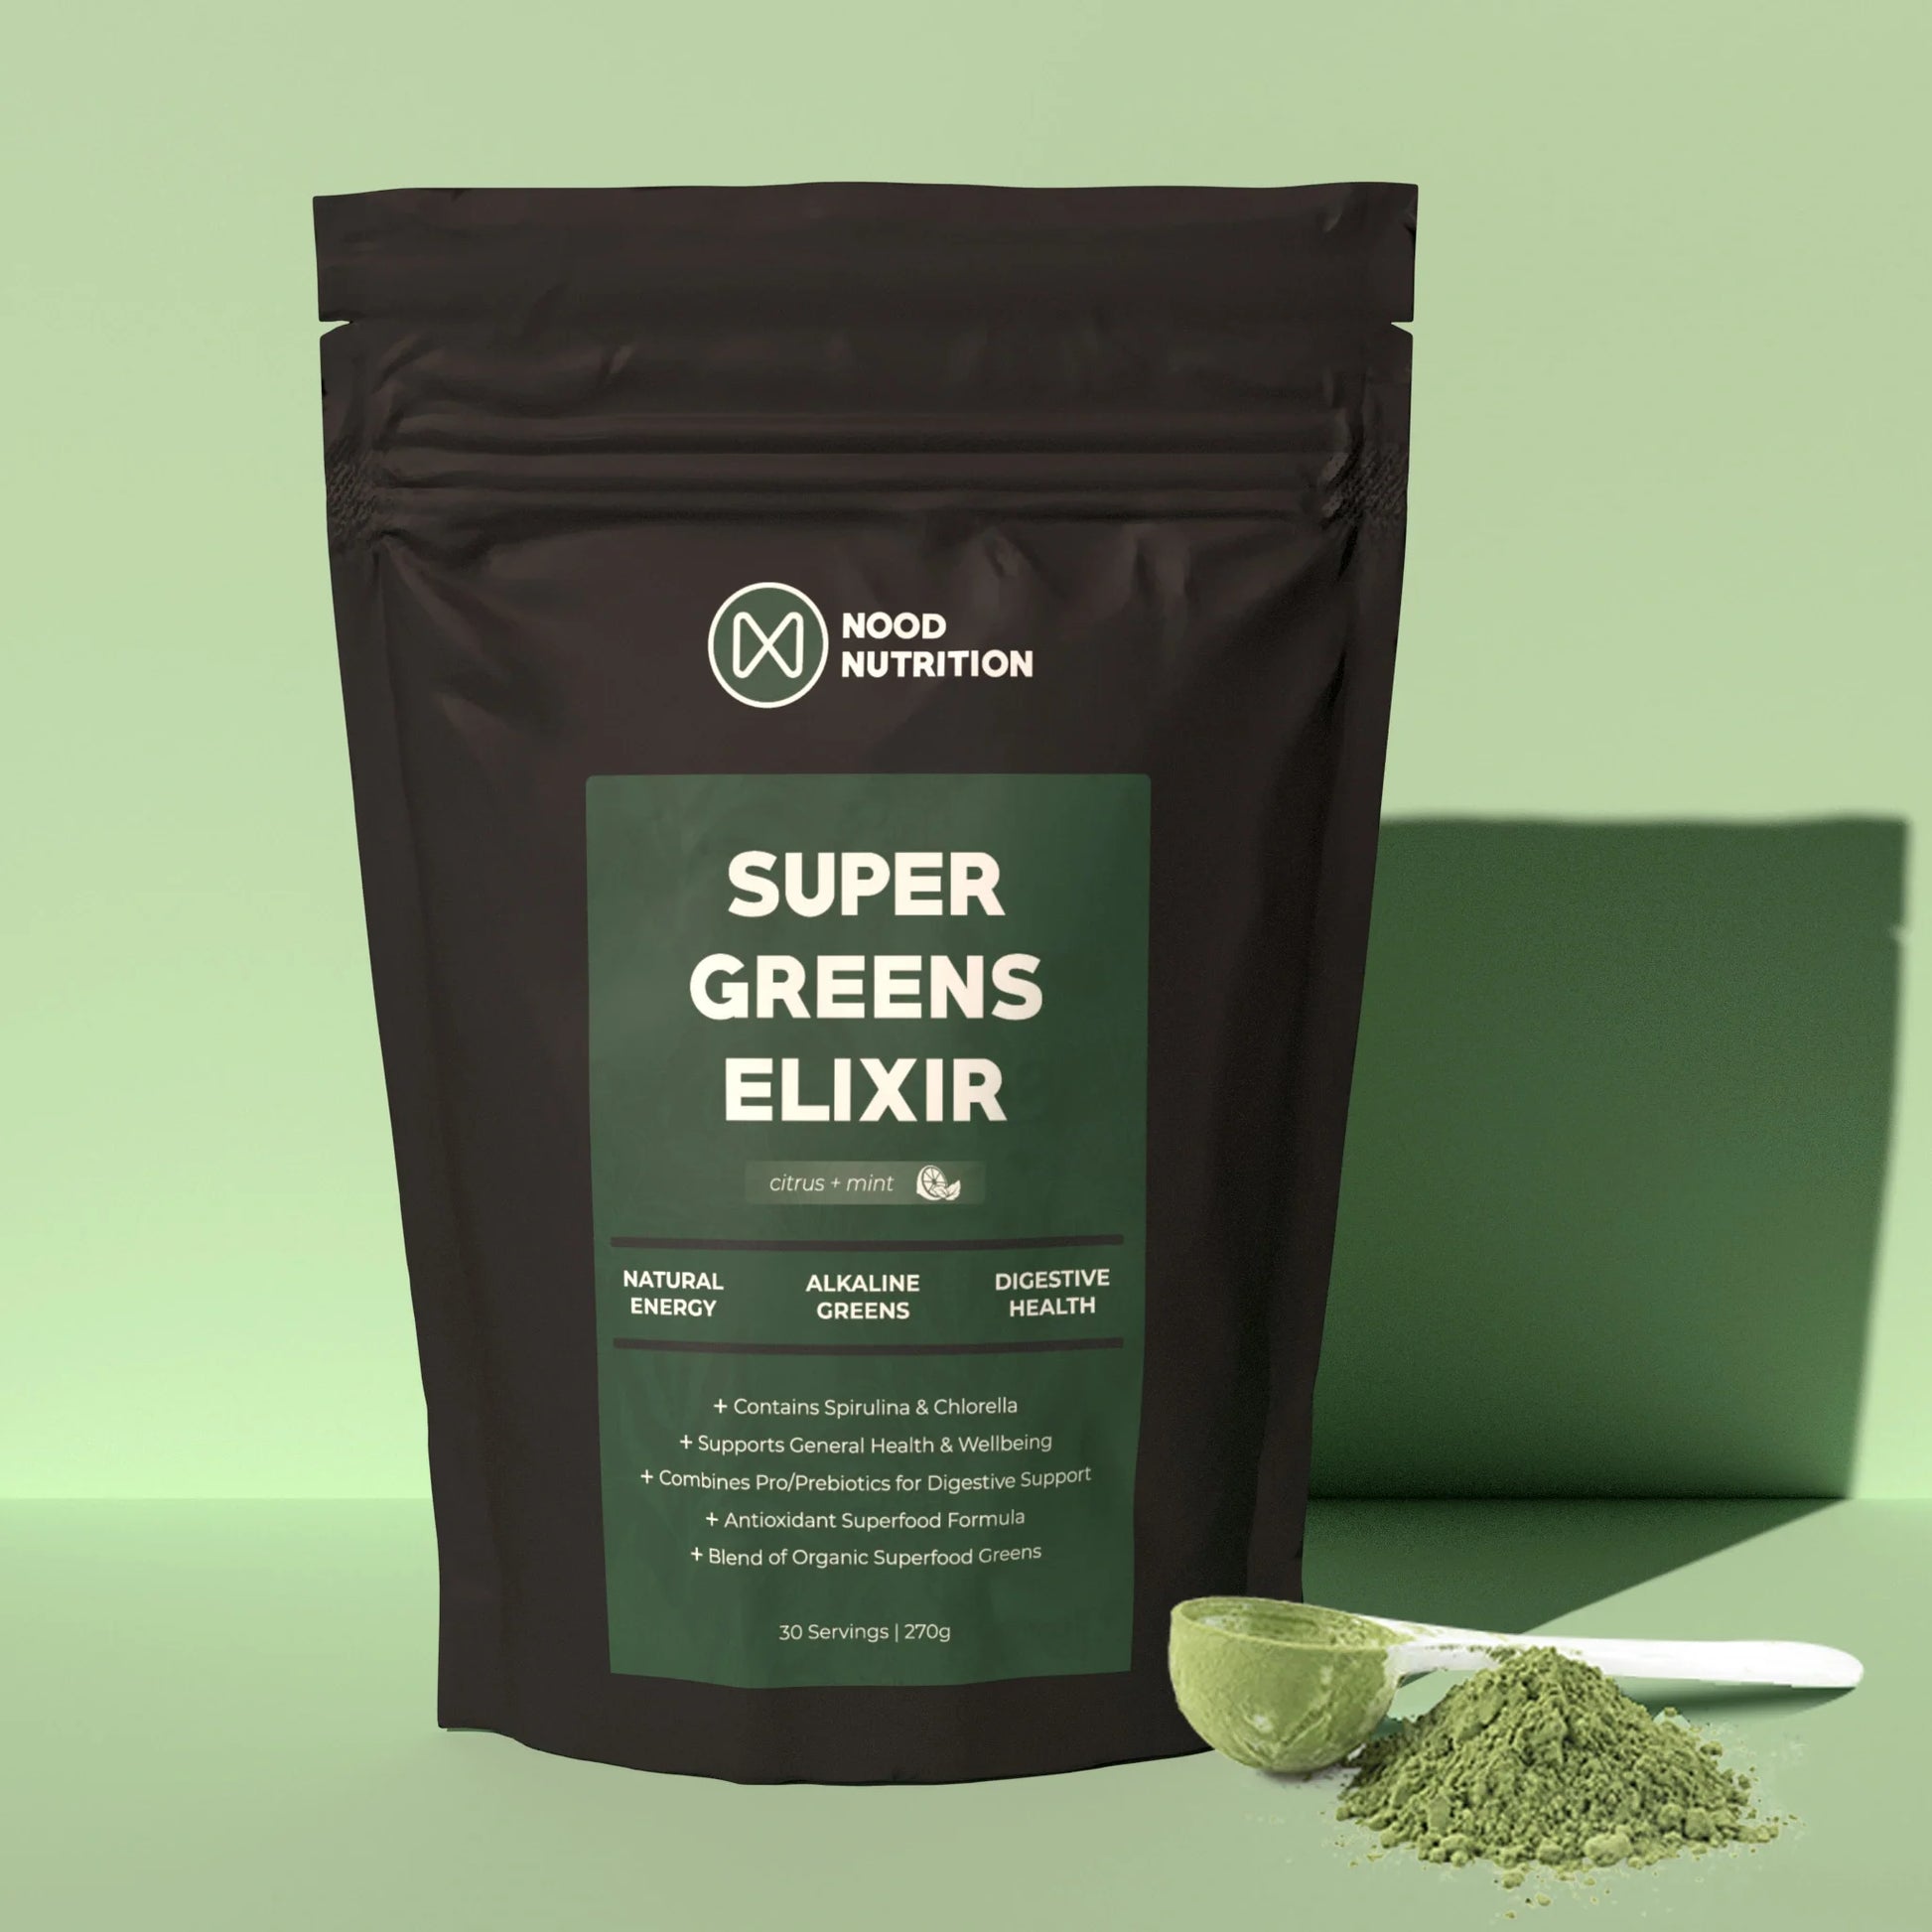 new_super_greens_elixir_with_powder__PID:cc533bb8-5919-4510-954a-bc0ac4cad4d0